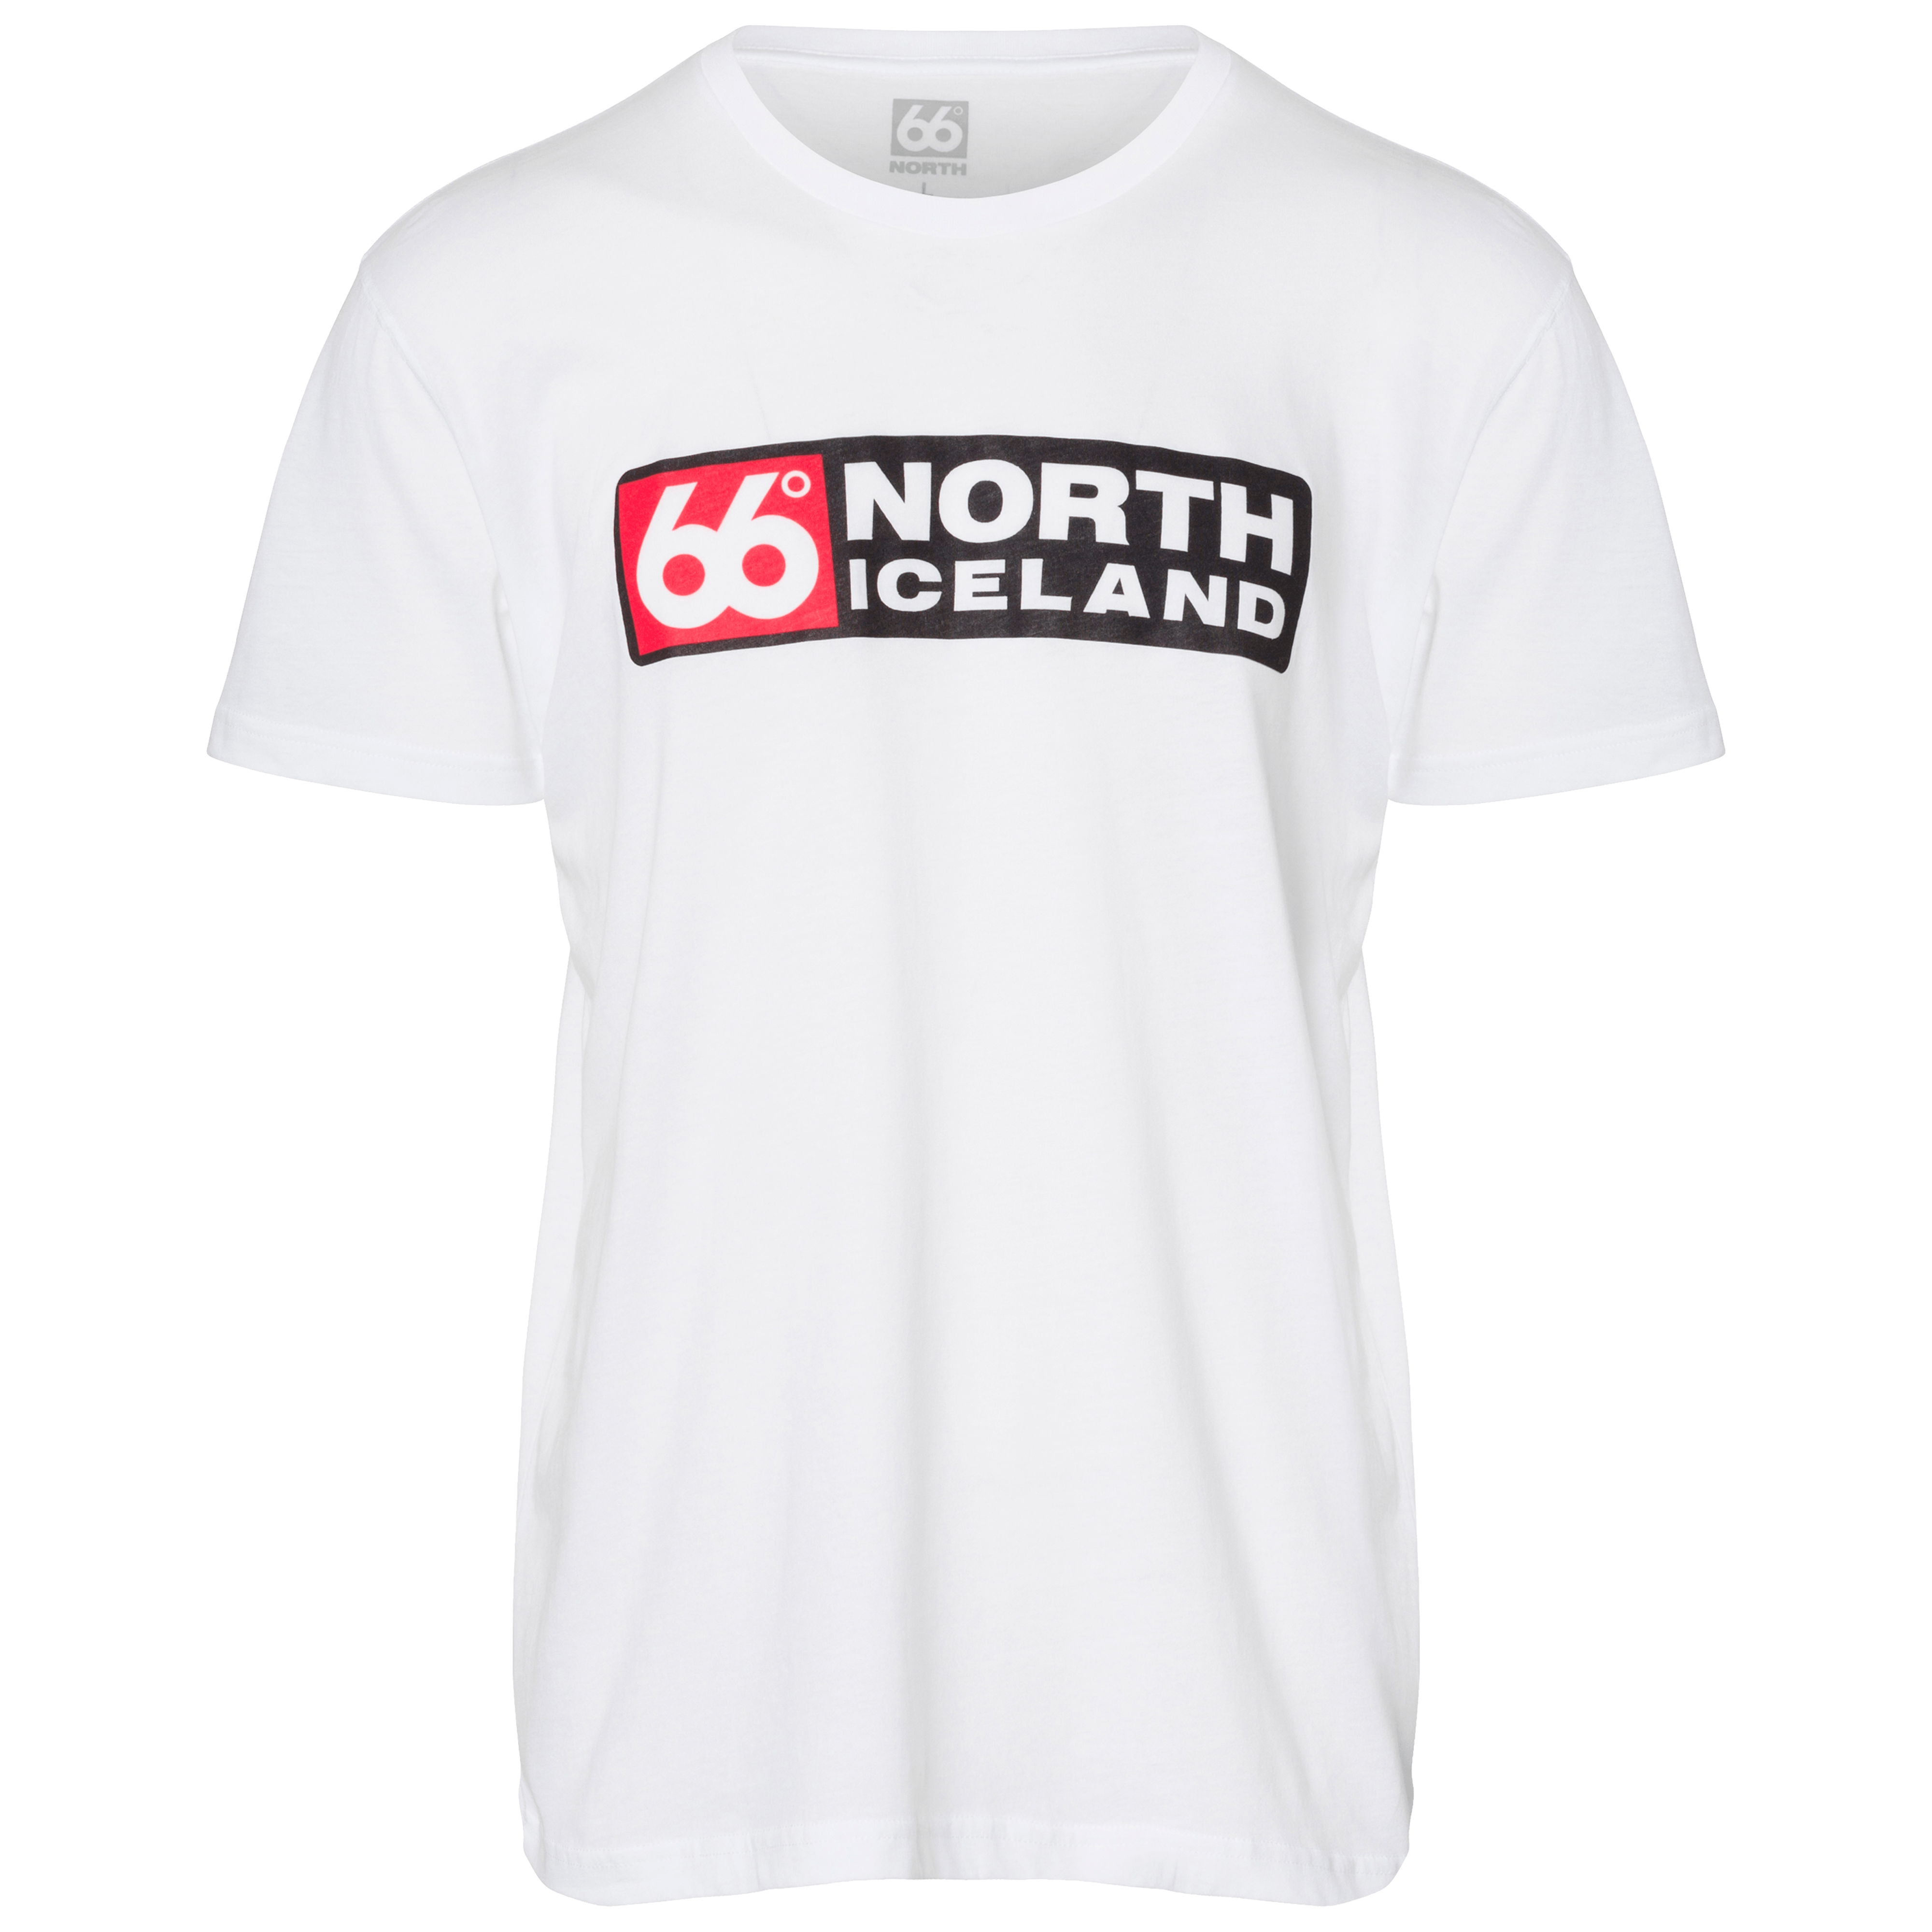 66 north shirt